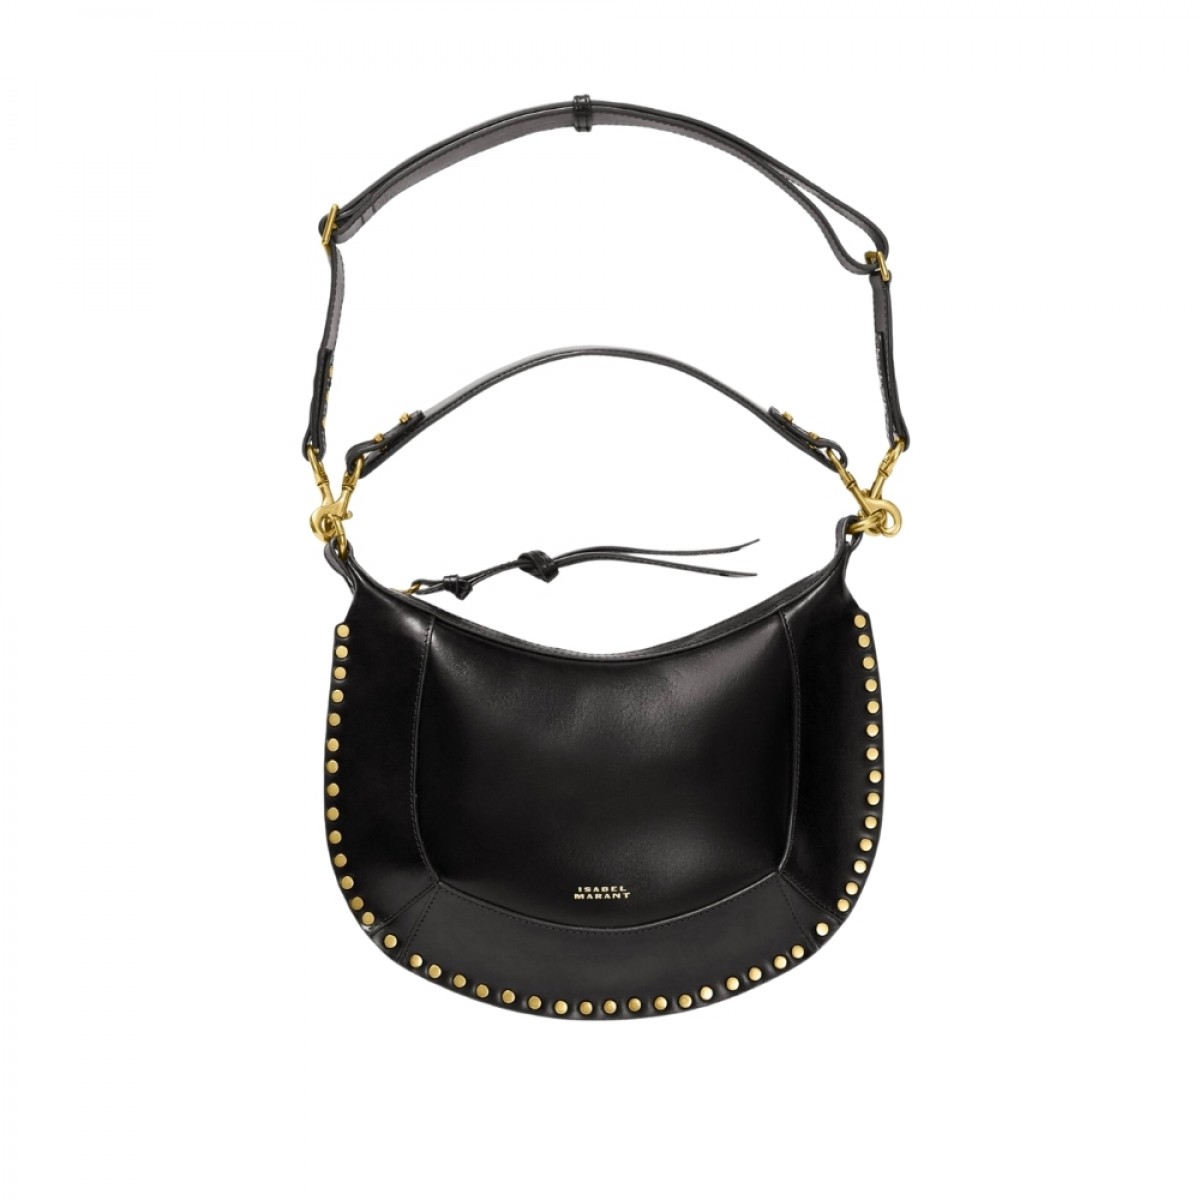 naoko leather shoulder bag - black - front